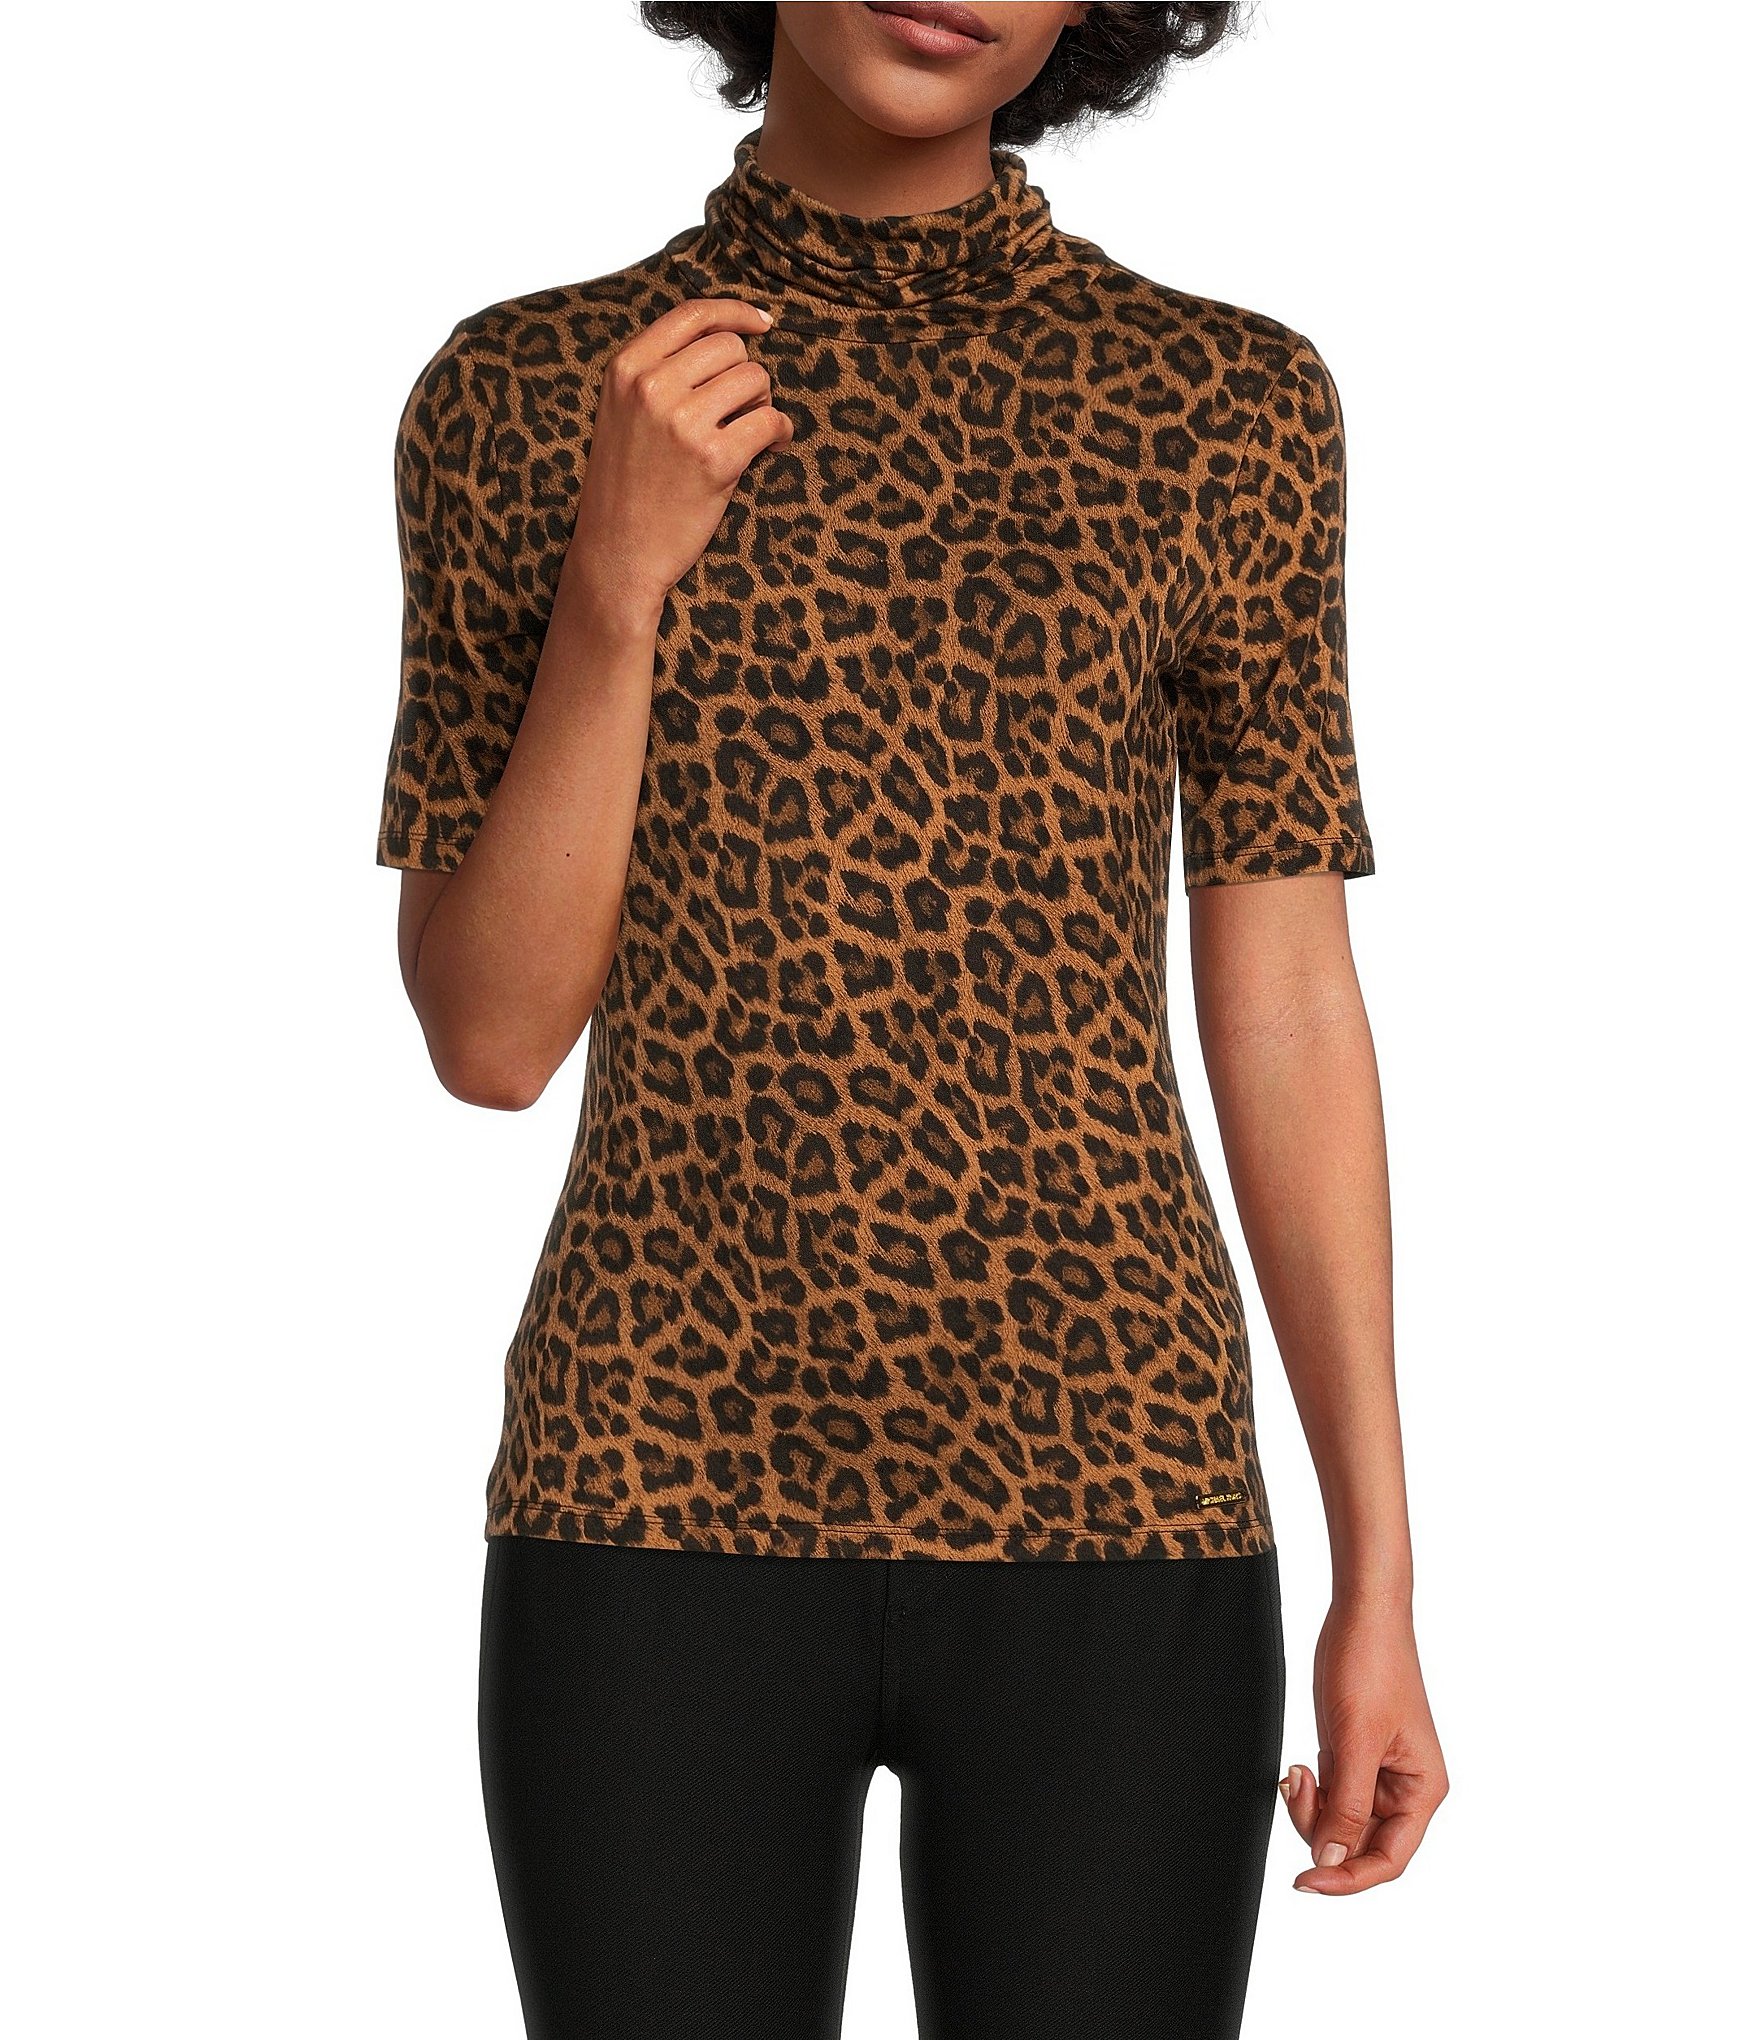 michael kors leopard blouse